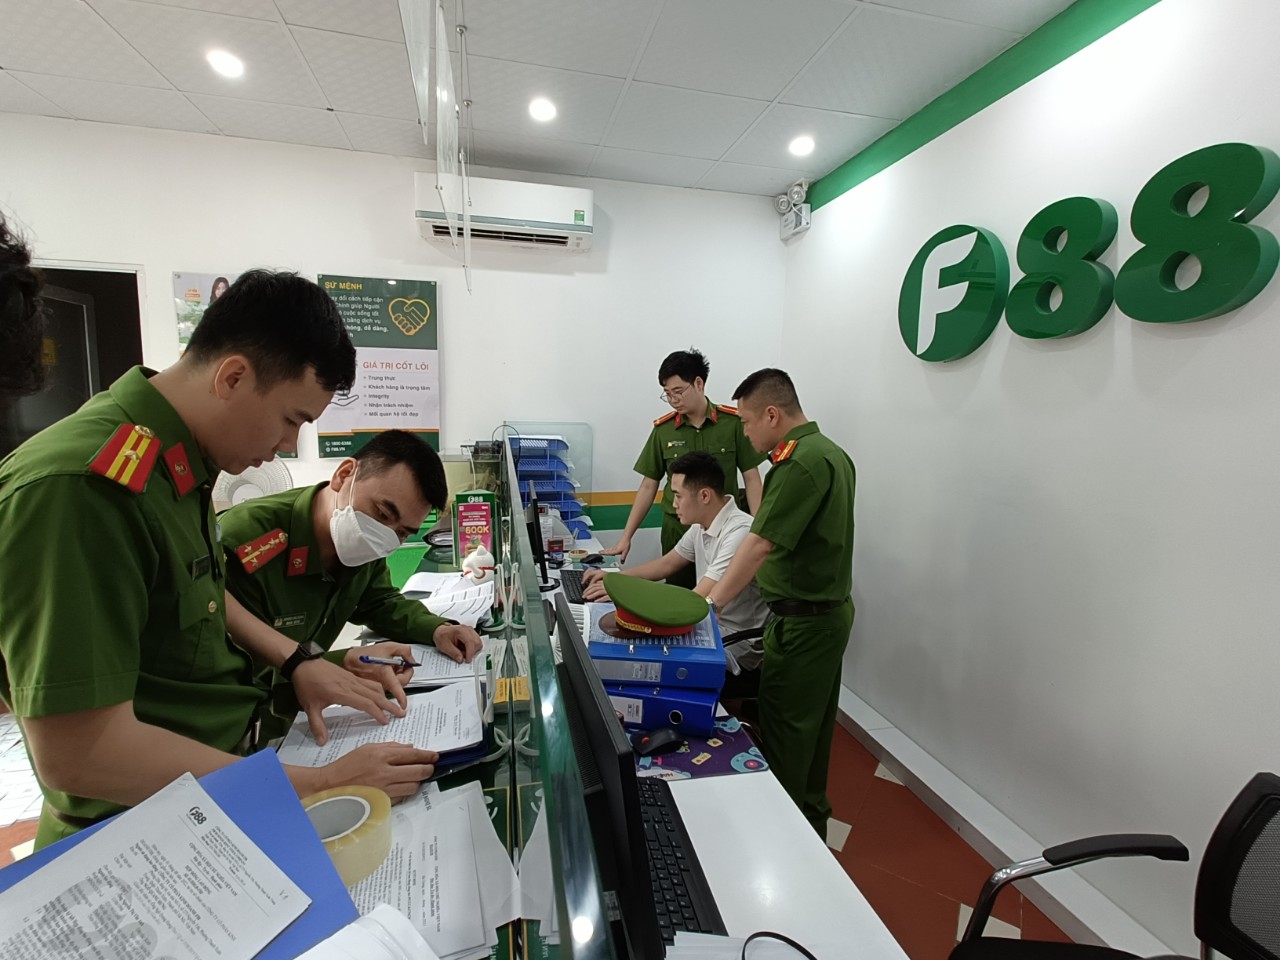 Cơ quan công an tiến hành kiểm tra tại địa điểm kinh doanh của F88 tại Bắc Giang.